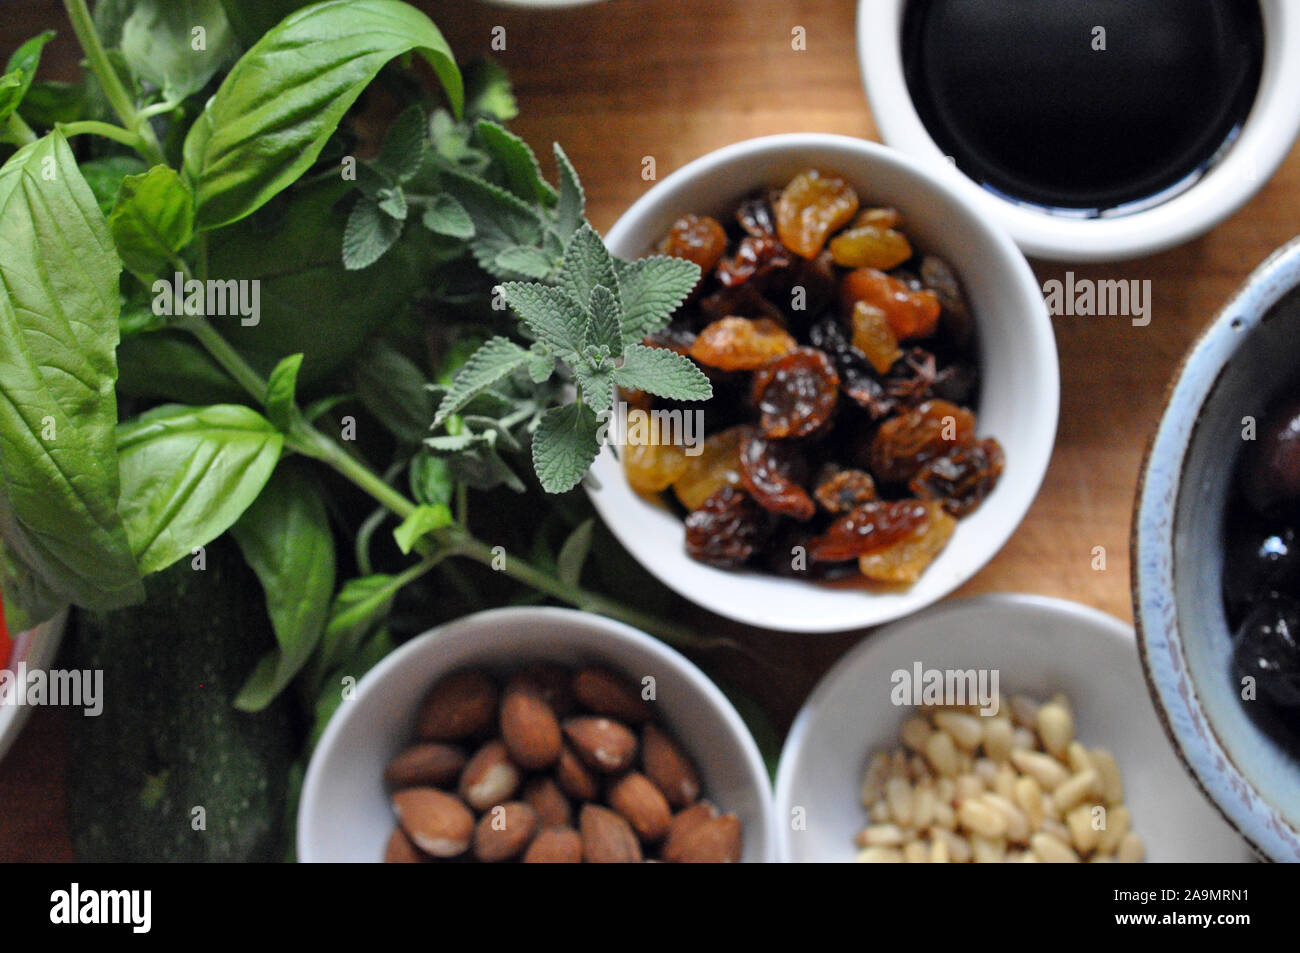 Les herbes, les raisins secs, les noix, les olives de dessus dans de petits bols en céramique Banque D'Images